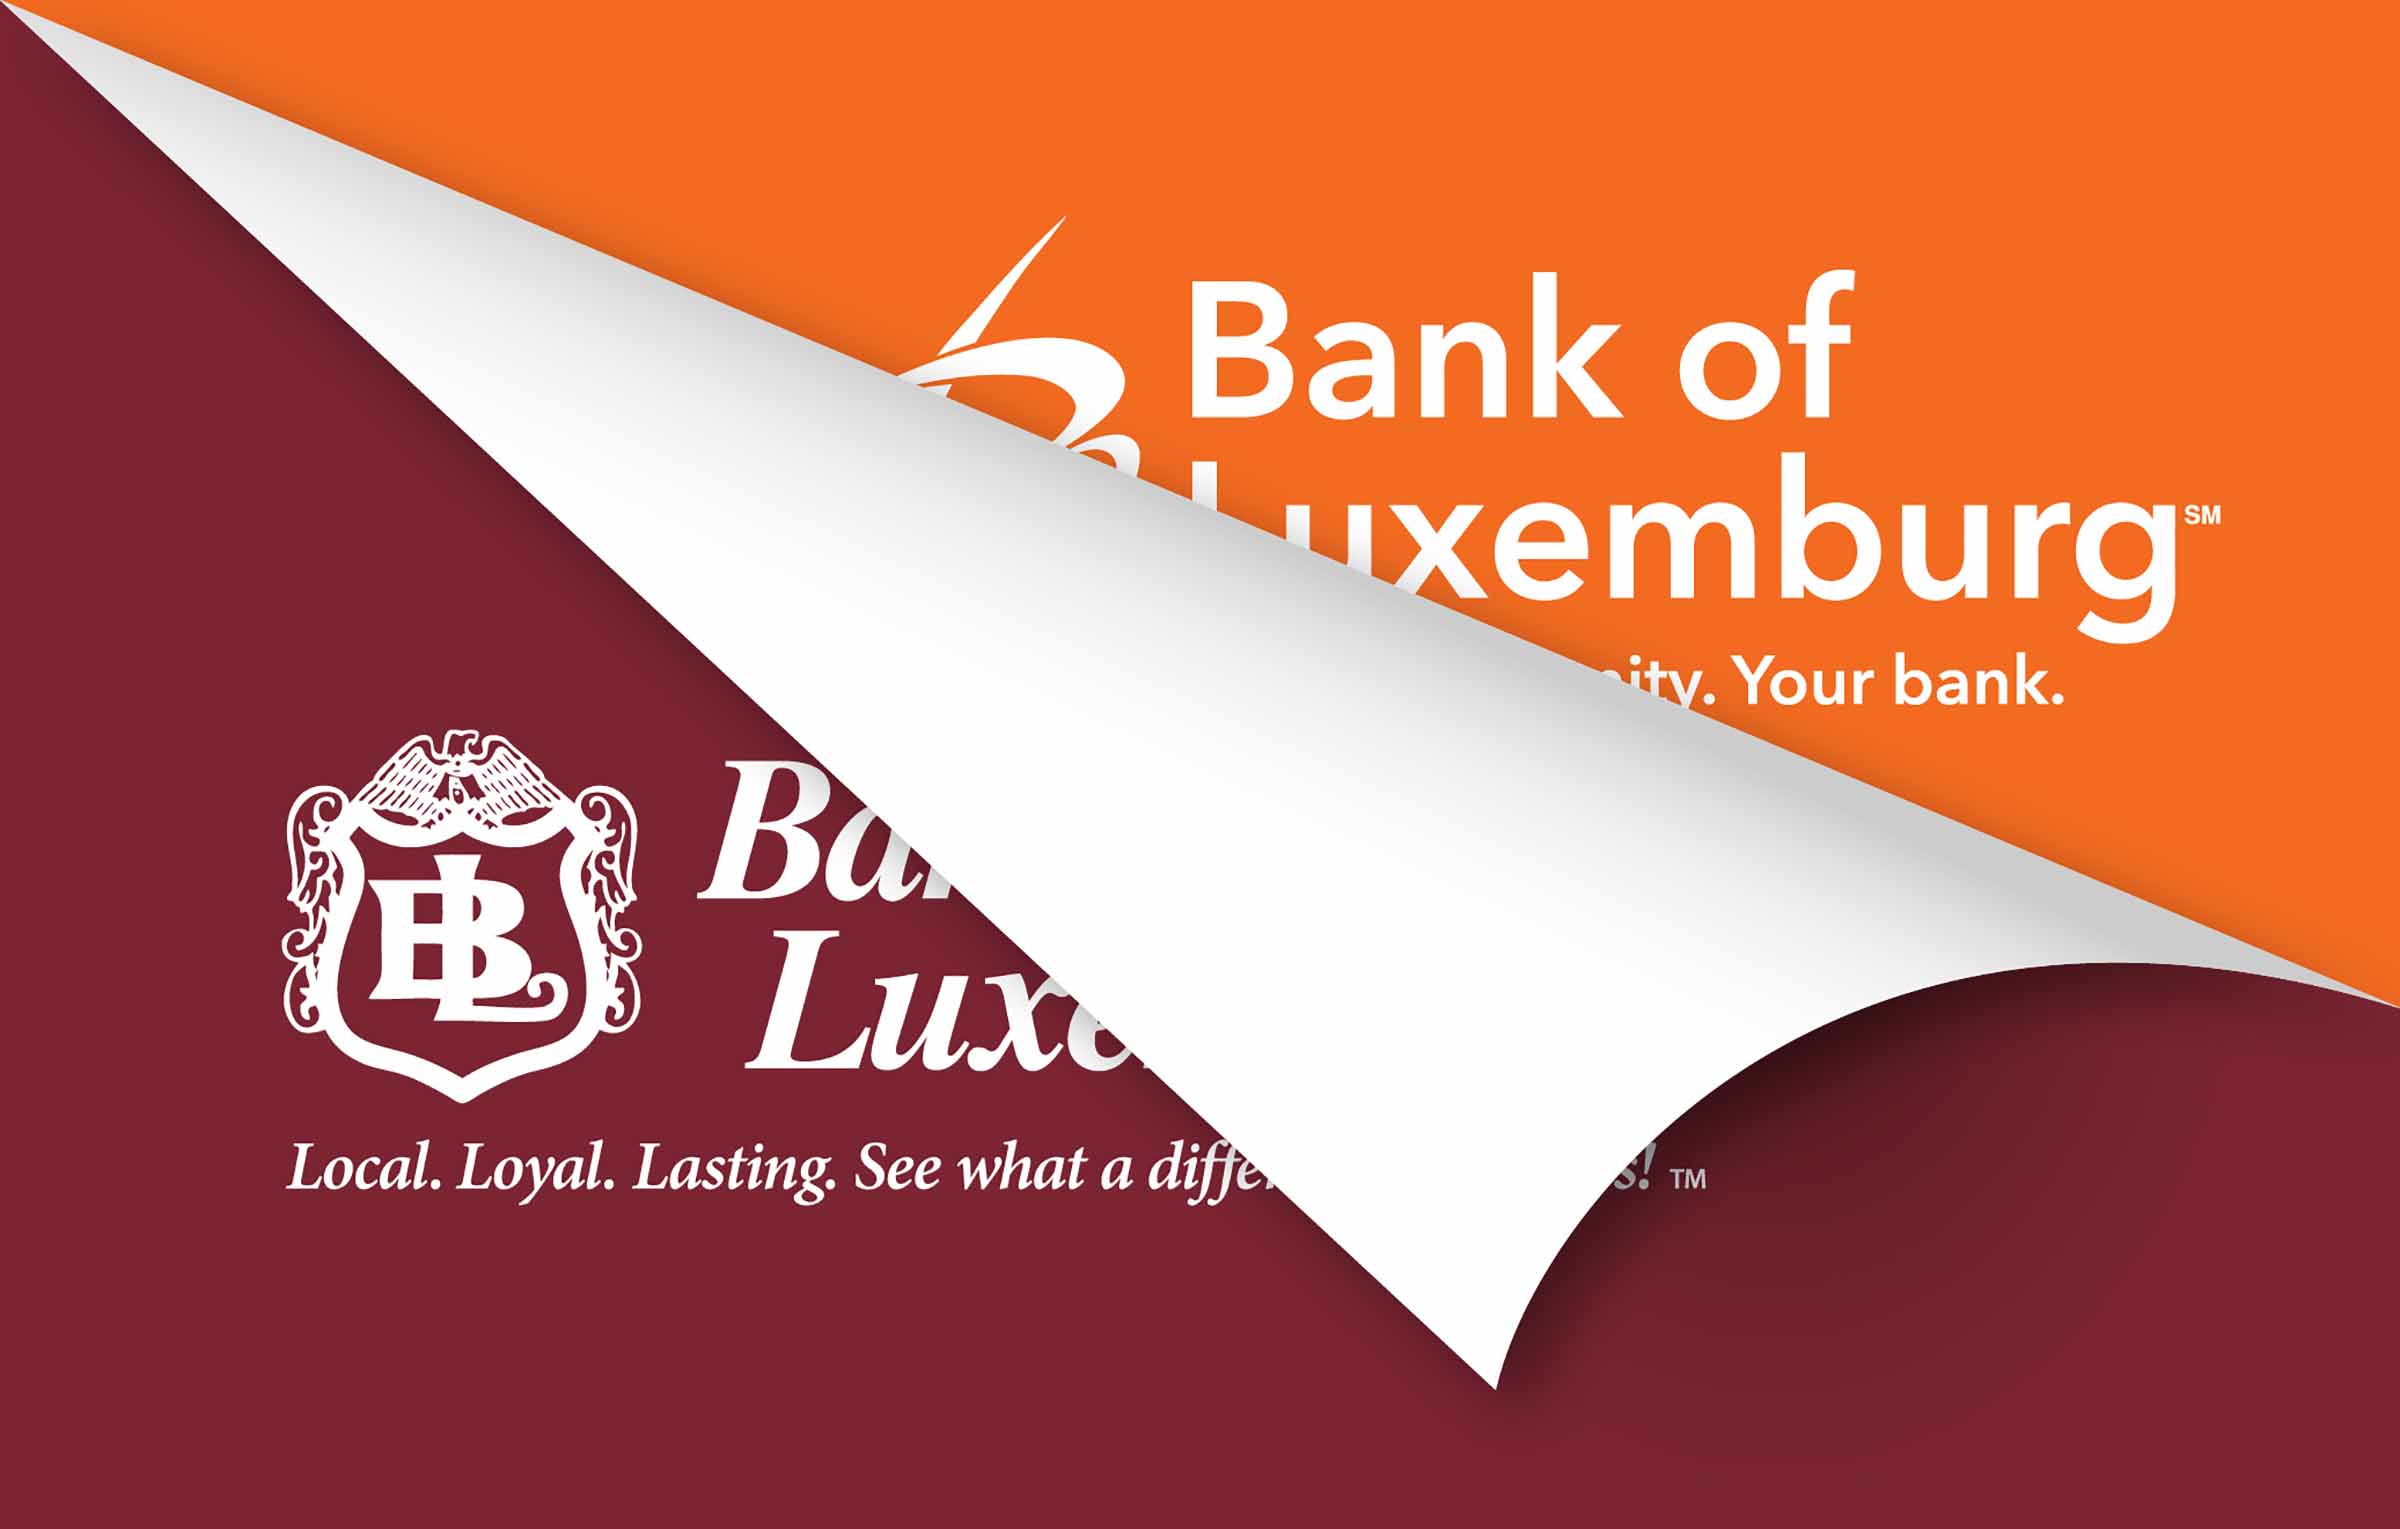 Bank of Lexemburg new logo being revealed